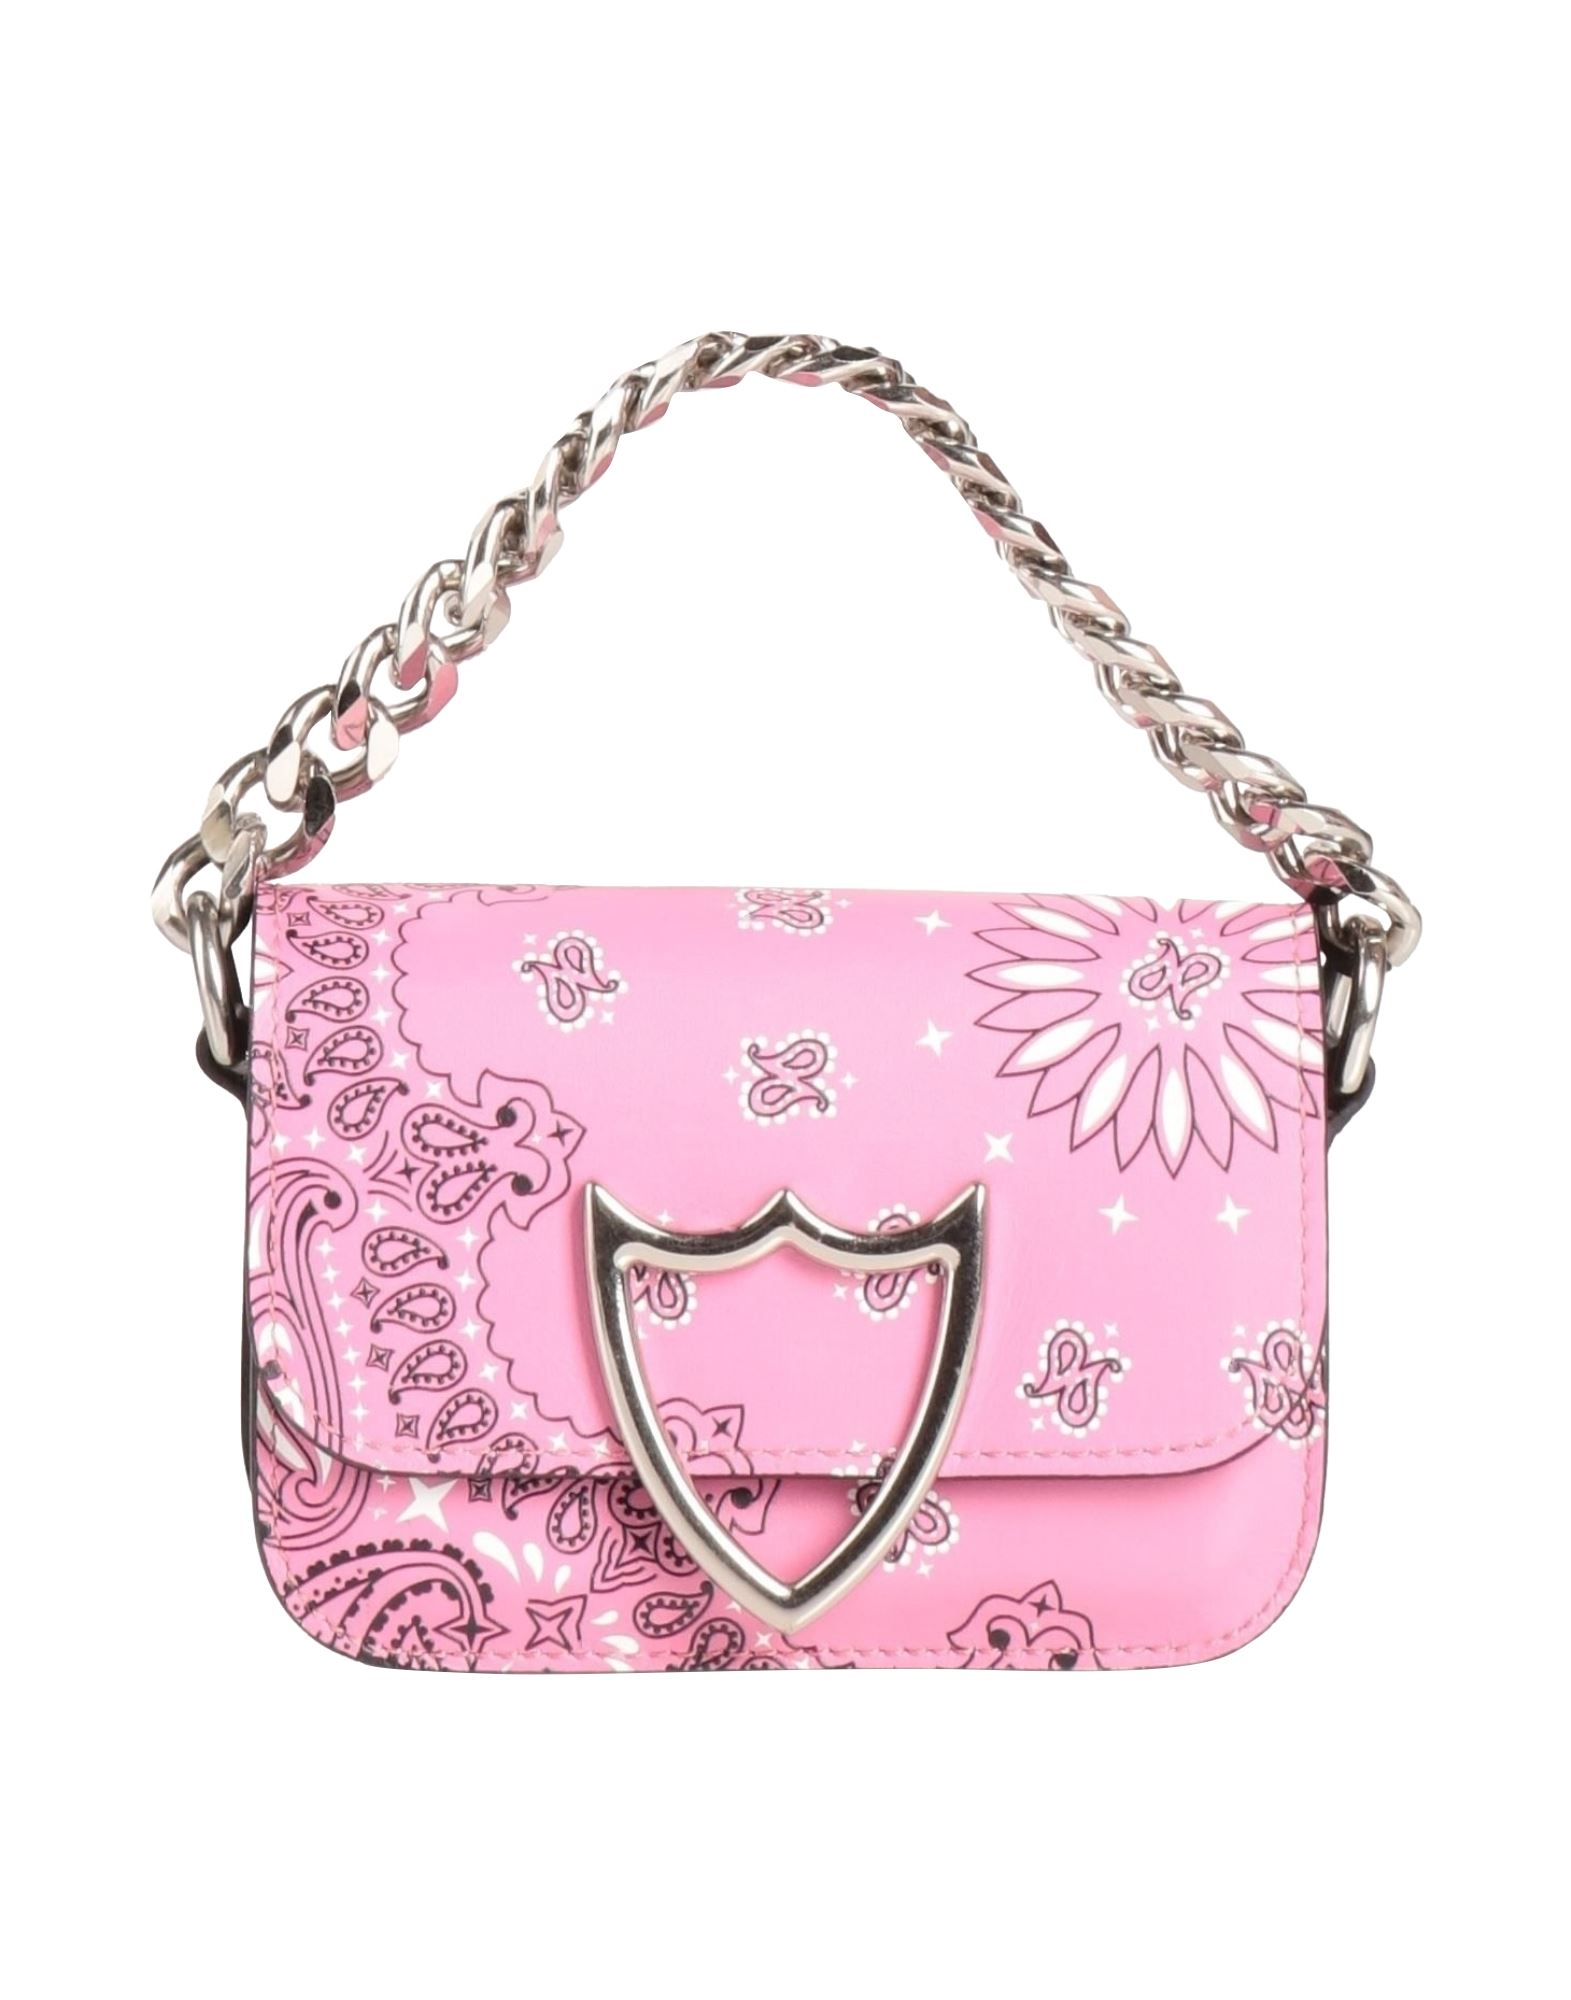 Htc Handbags In Pink